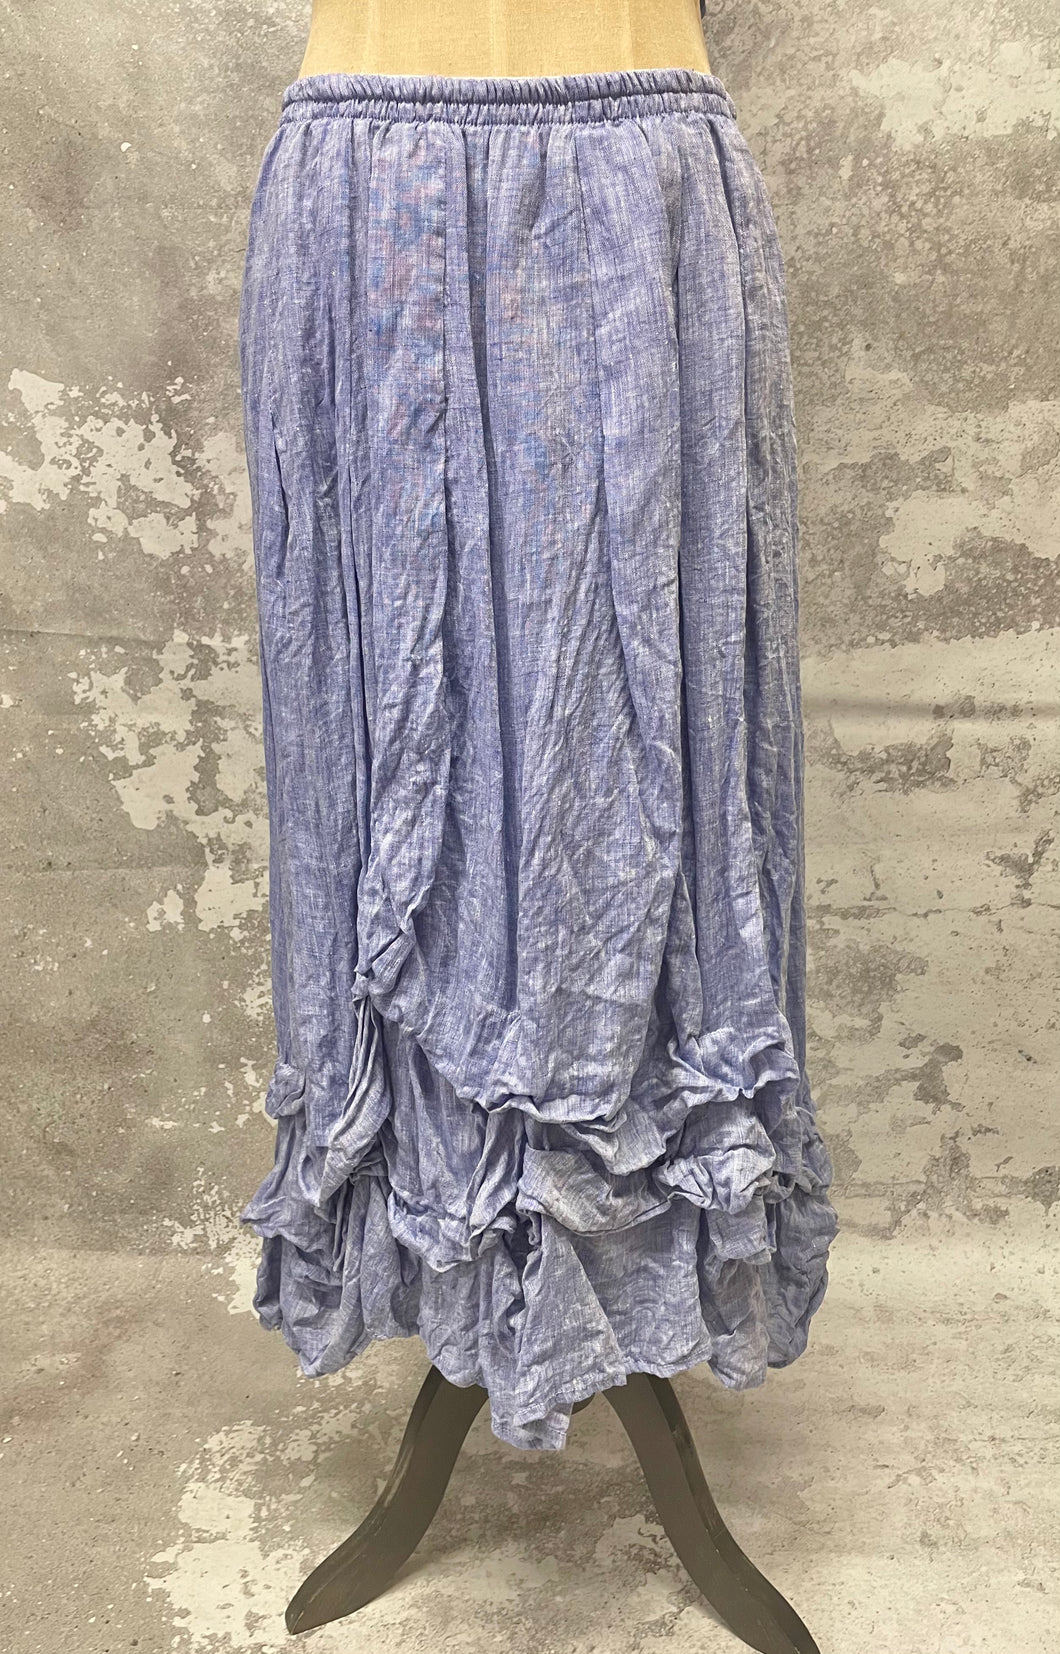 Violet blue rooshed skirt